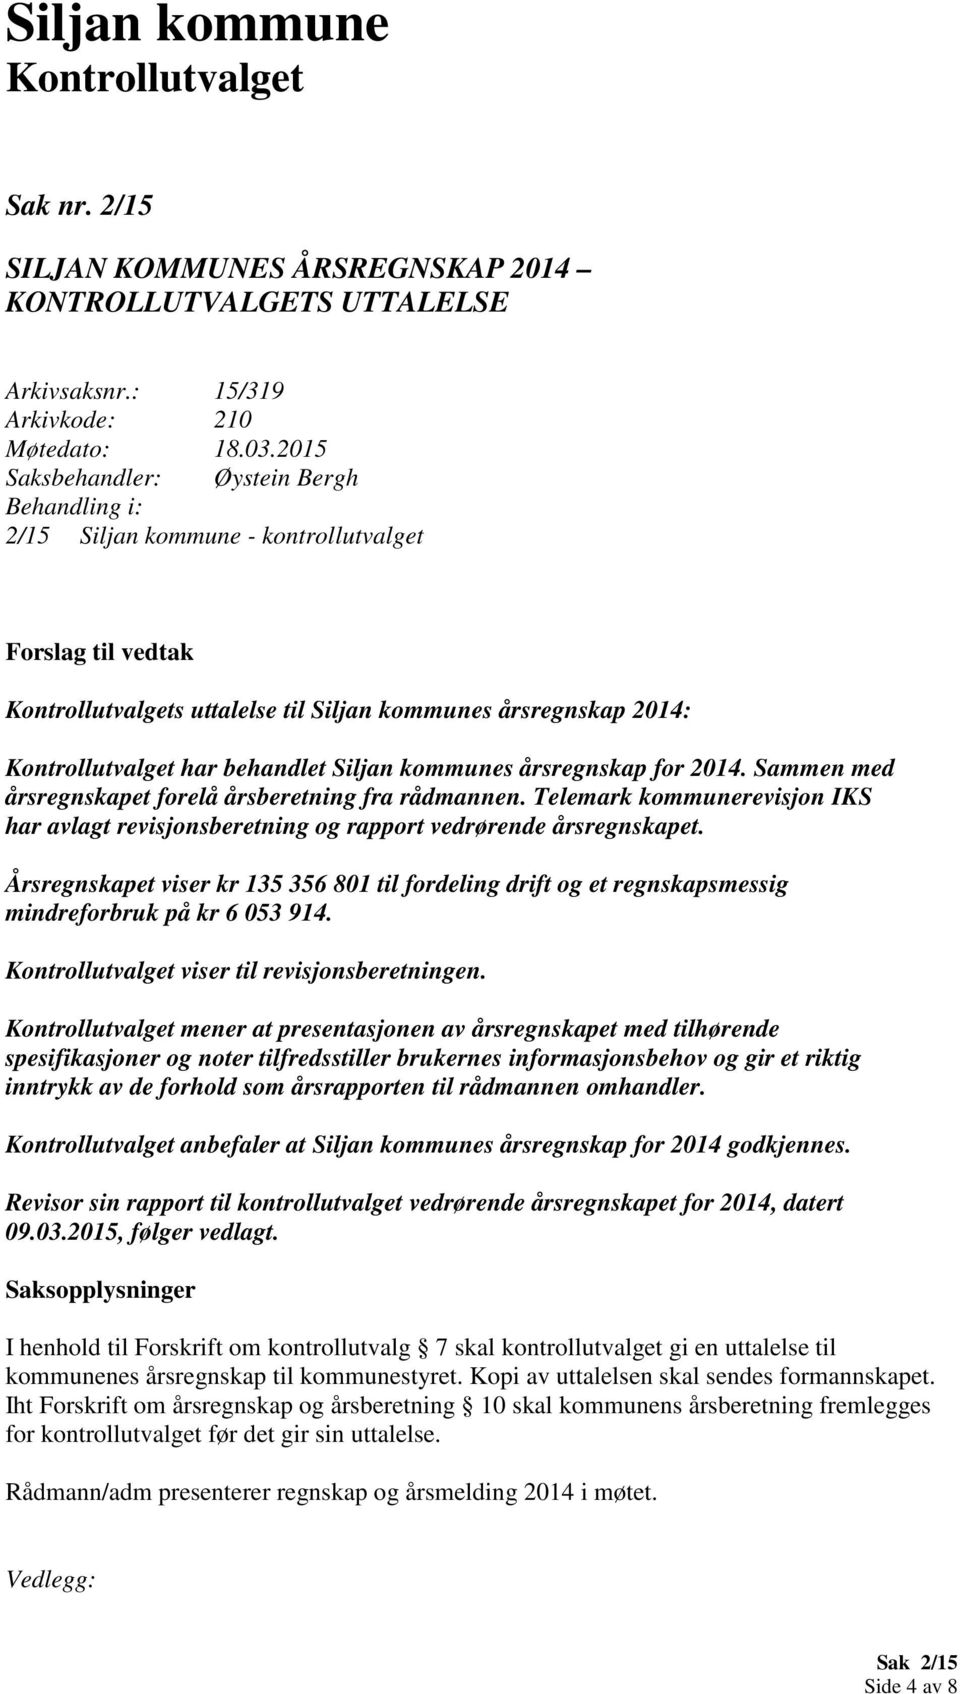 Sammen med årsregnskapet forelå årsberetning fra rådmannen. Telemark kommunerevisjon IKS har avlagt revisjonsberetning og rapport vedrørende årsregnskapet.